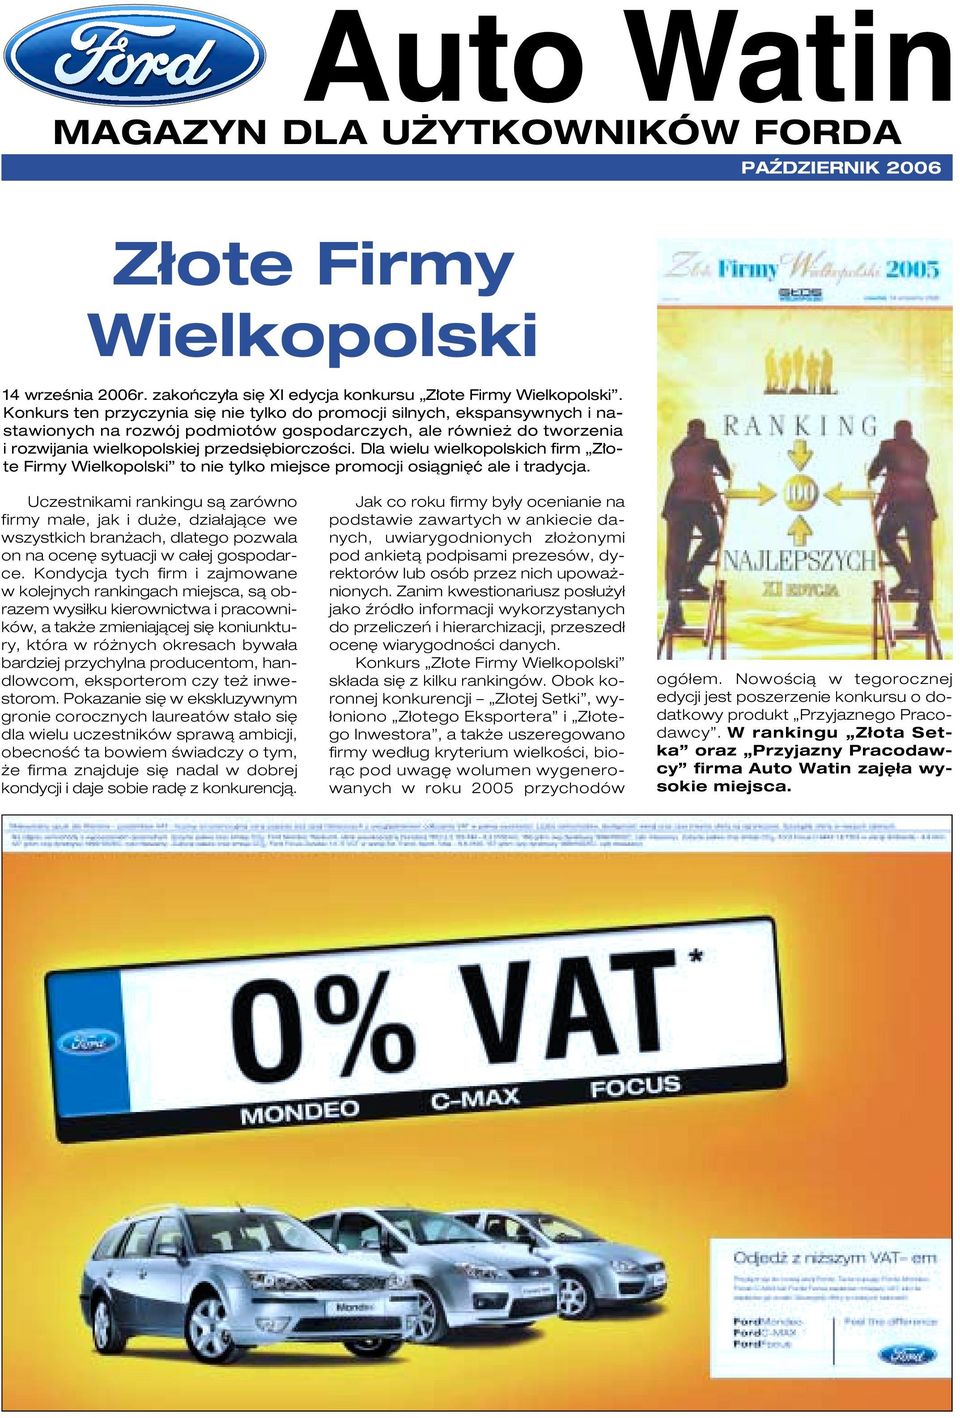 Dla wielu wielkopolskich firm Z ote Firmy Wielkopolski to nie tylko miejsce promocji osiàgni ç ale i tradycja.